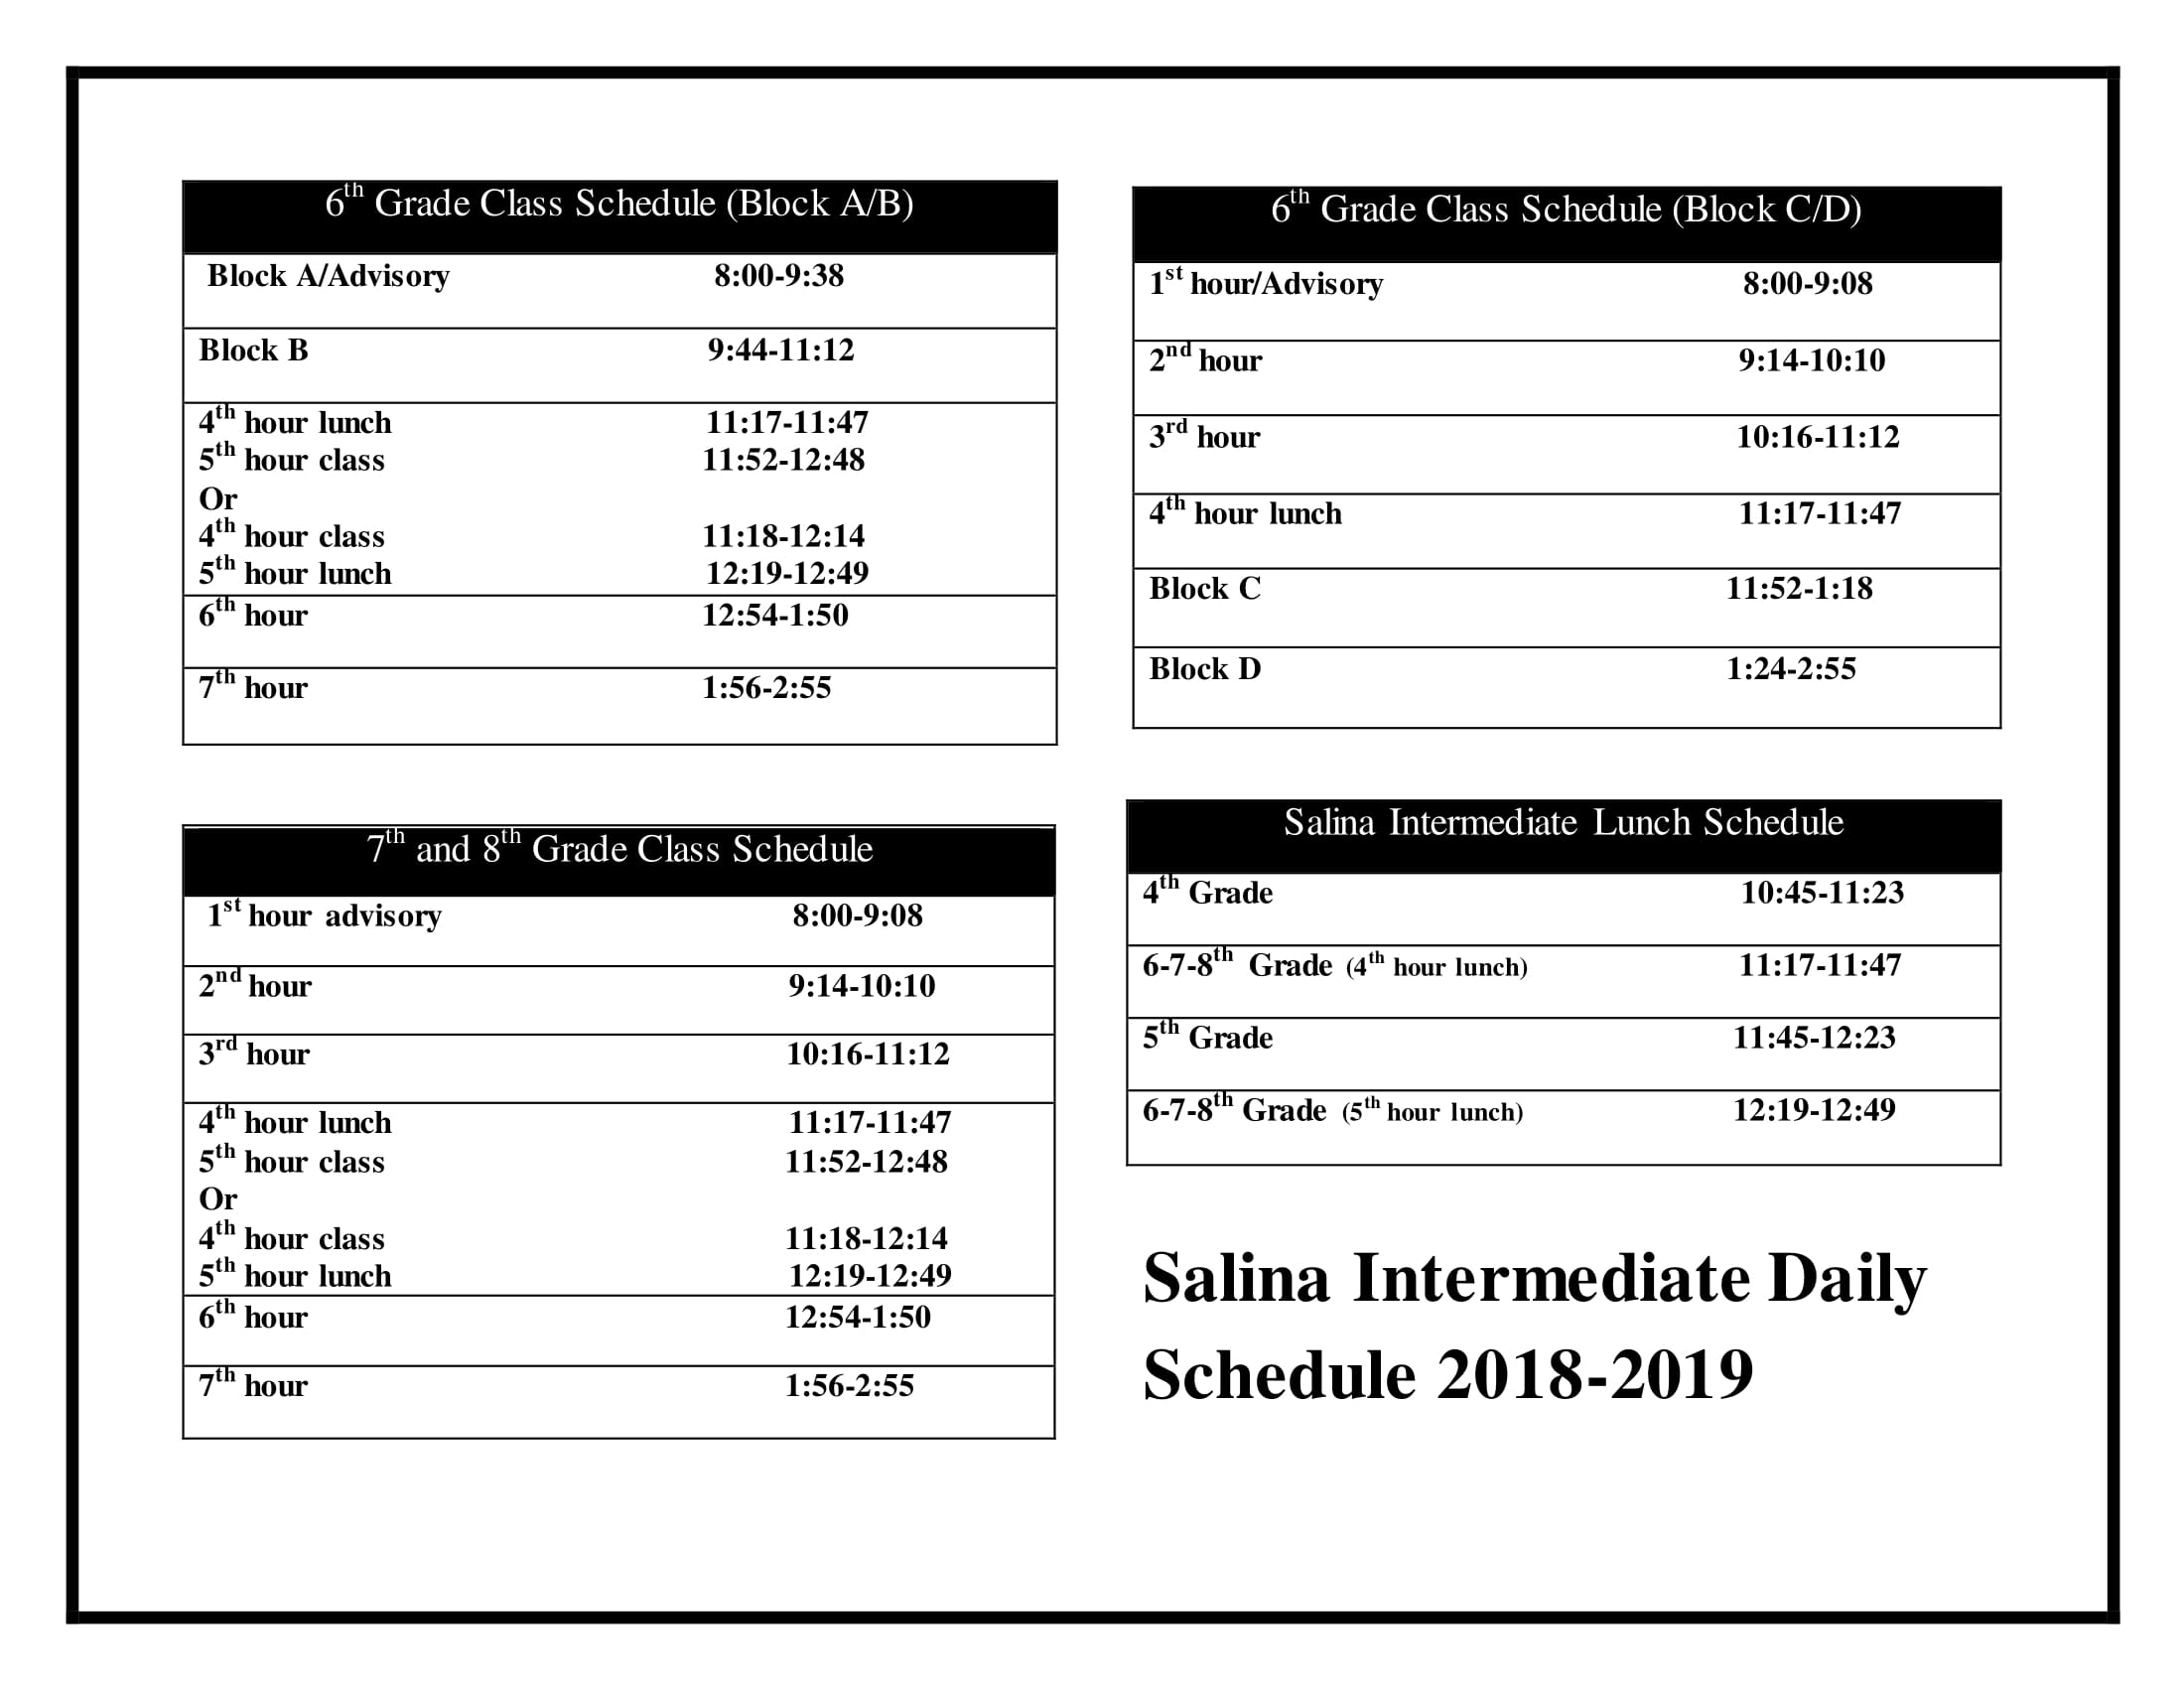 Salina Intermediate Daily Schedule Salina Intermediate School